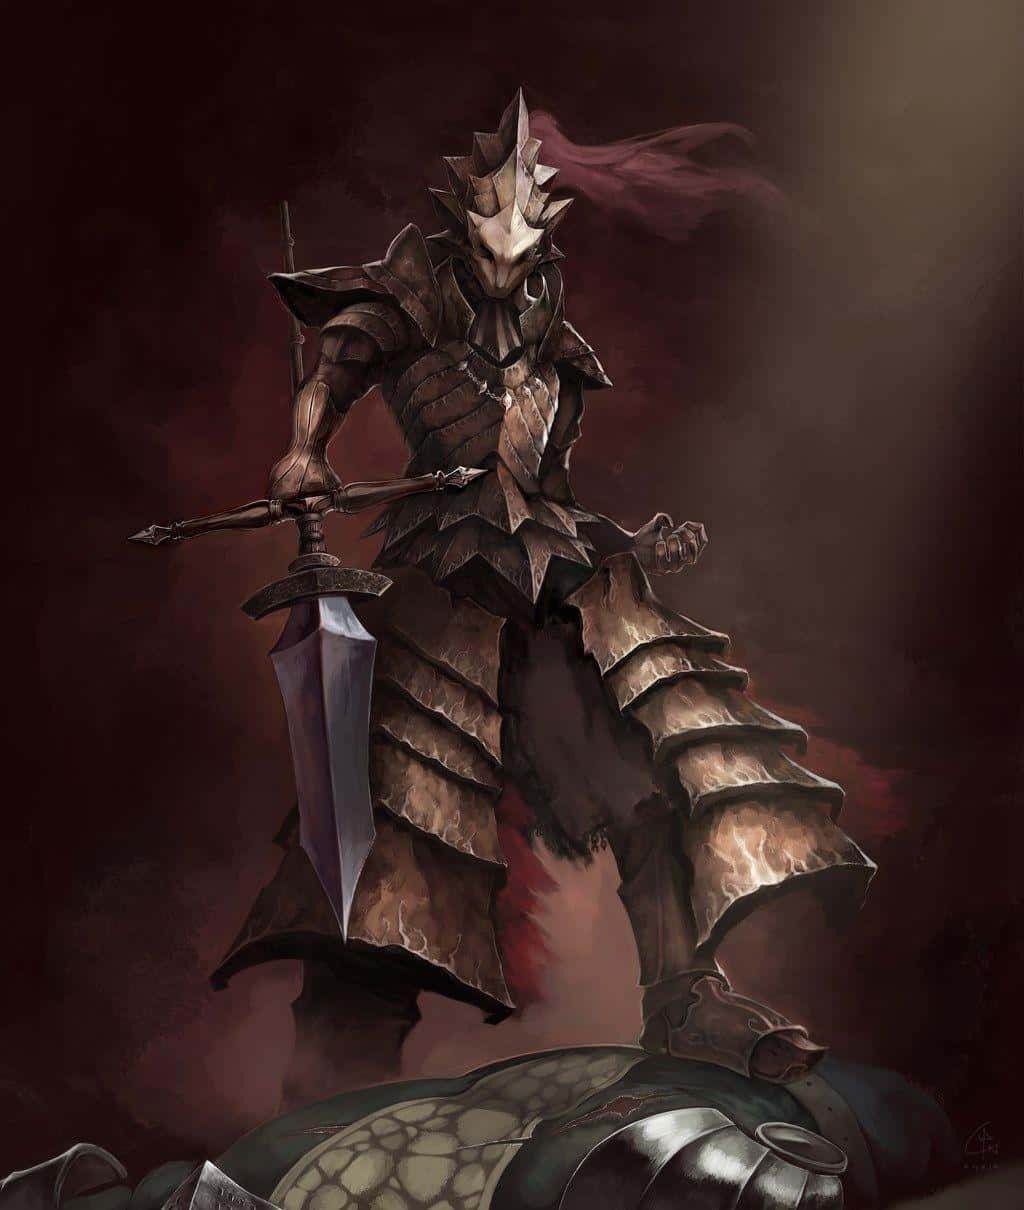 Dragon Slayer Ornstein in Battle Wallpaper